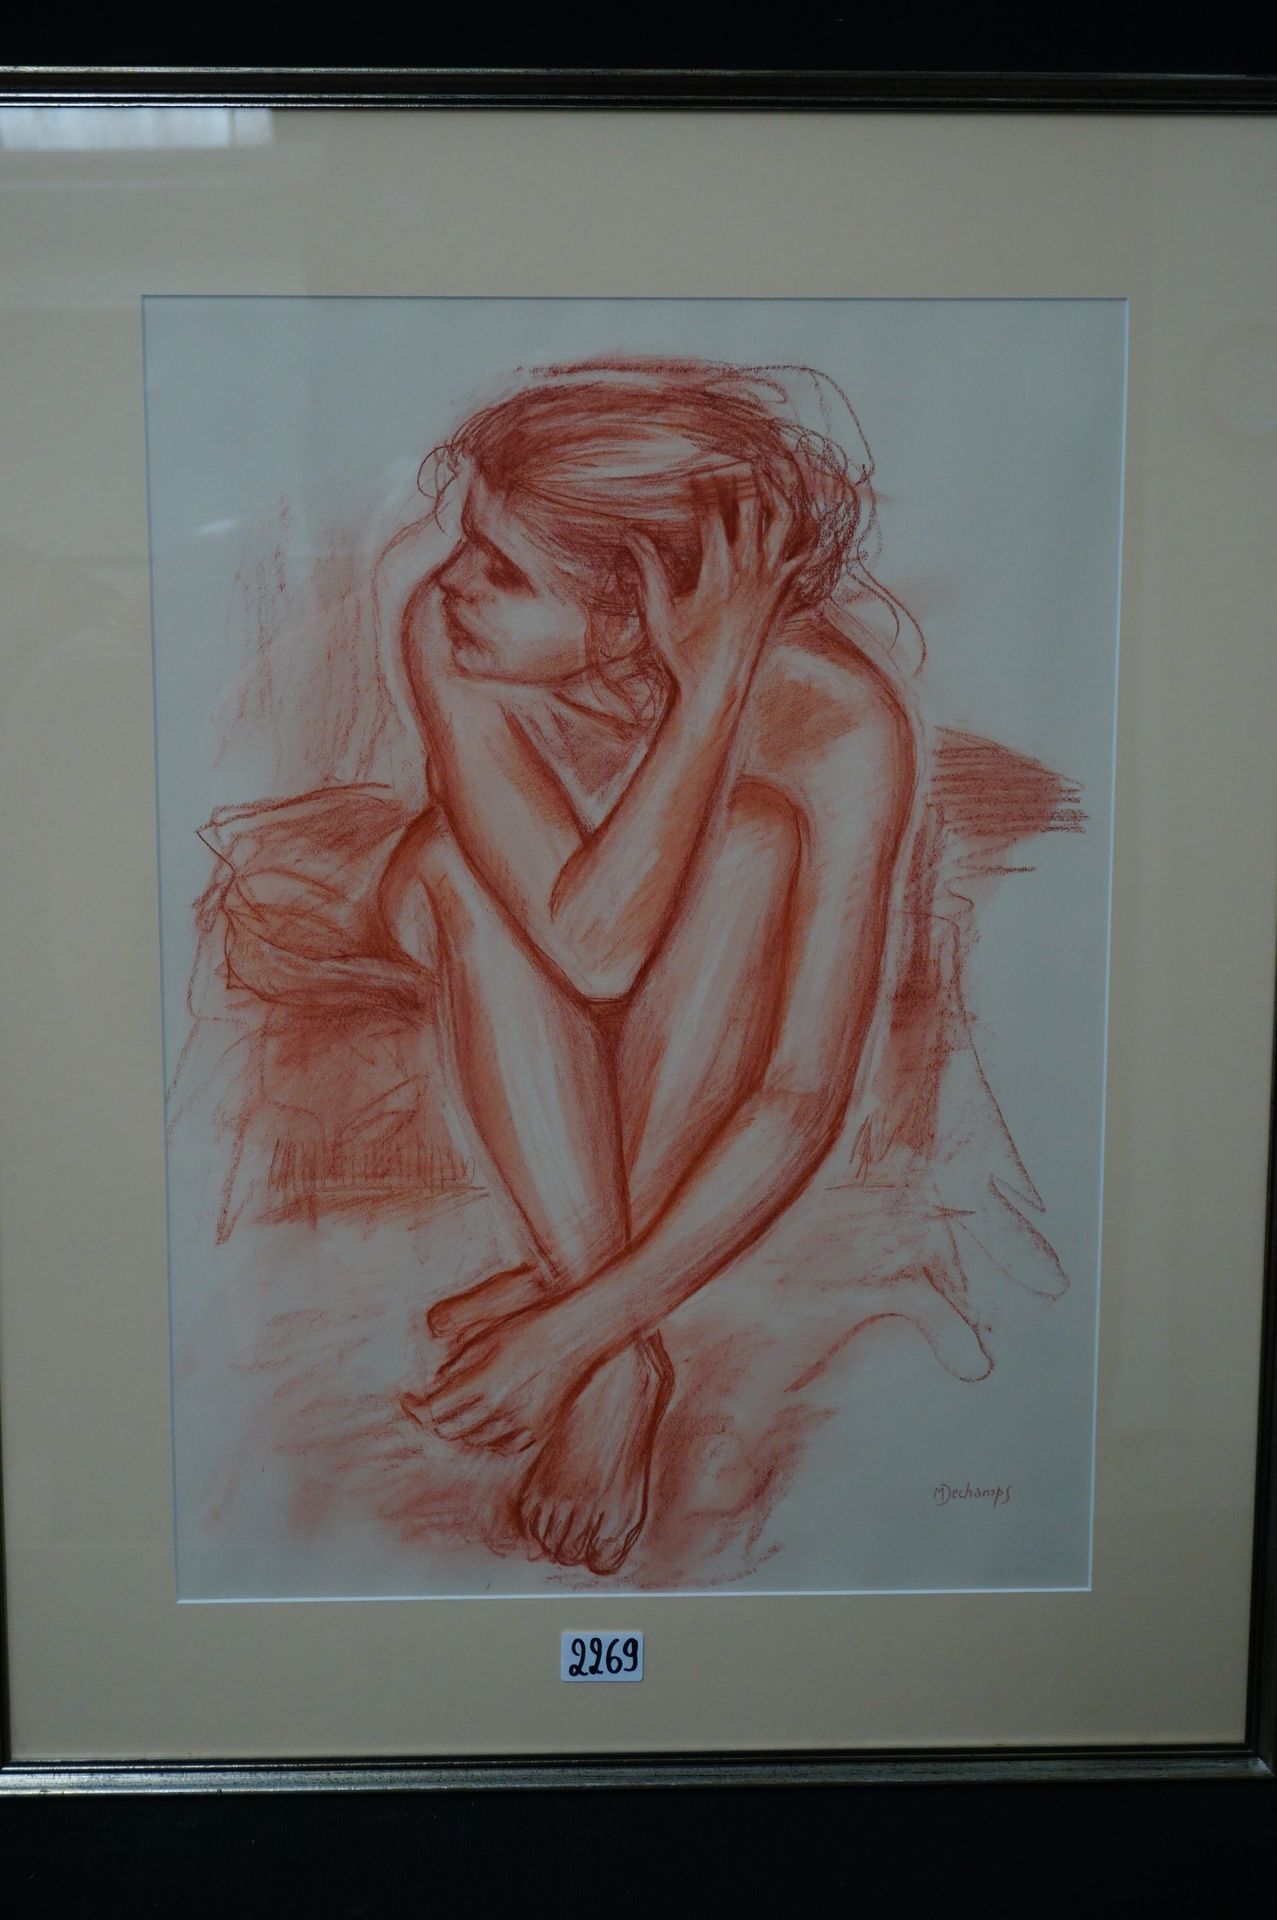 M. DESCHAMPS "Ballerina" - Sanguine - Drawn - 61 x 44 cm